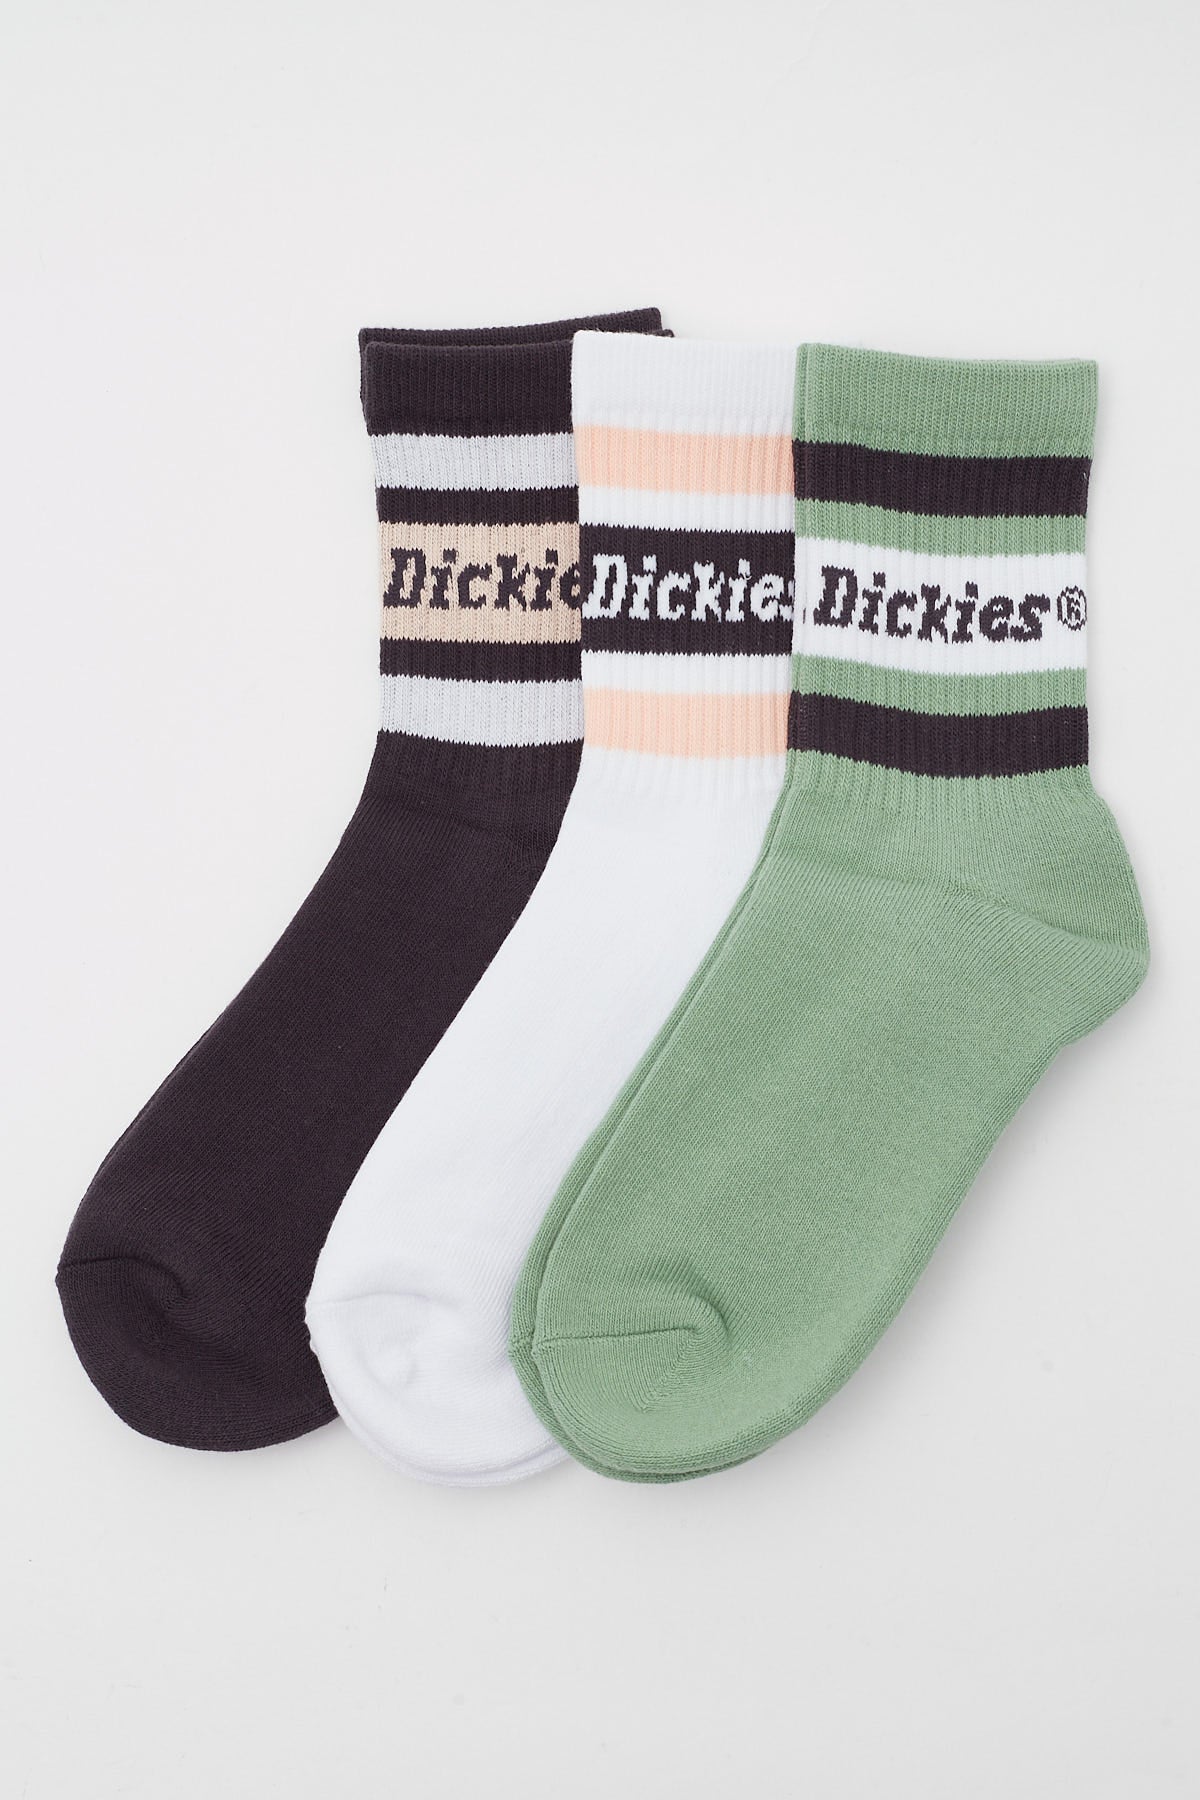 Dickies Standard Socks 3 Pack BLK/JADE/WHT